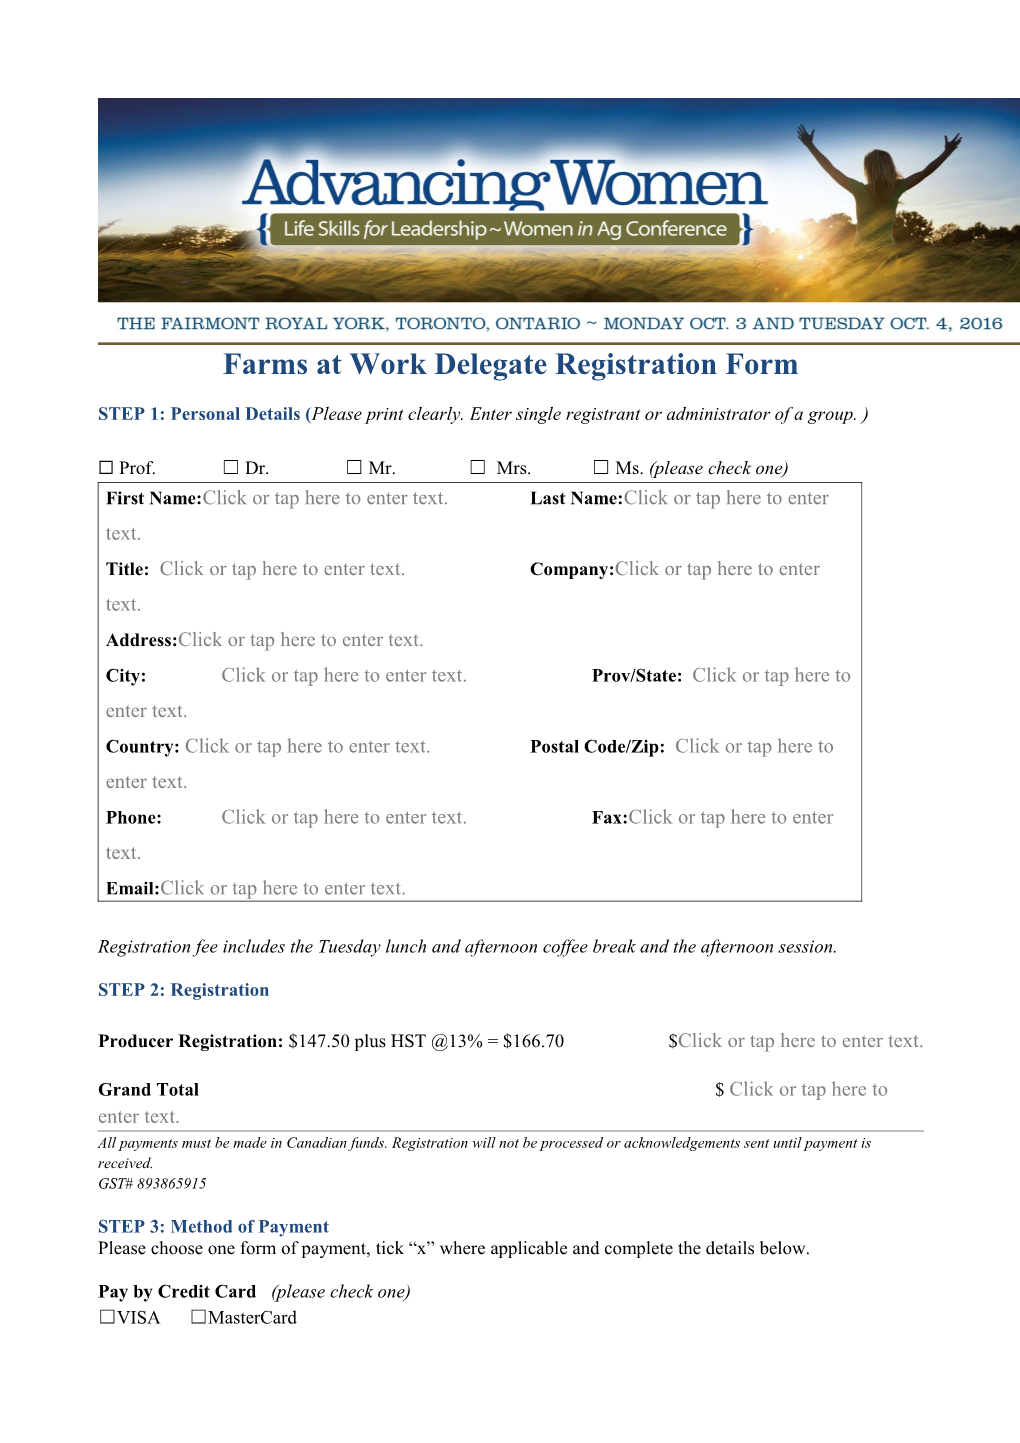 Farms at Work Delegate Registration Form